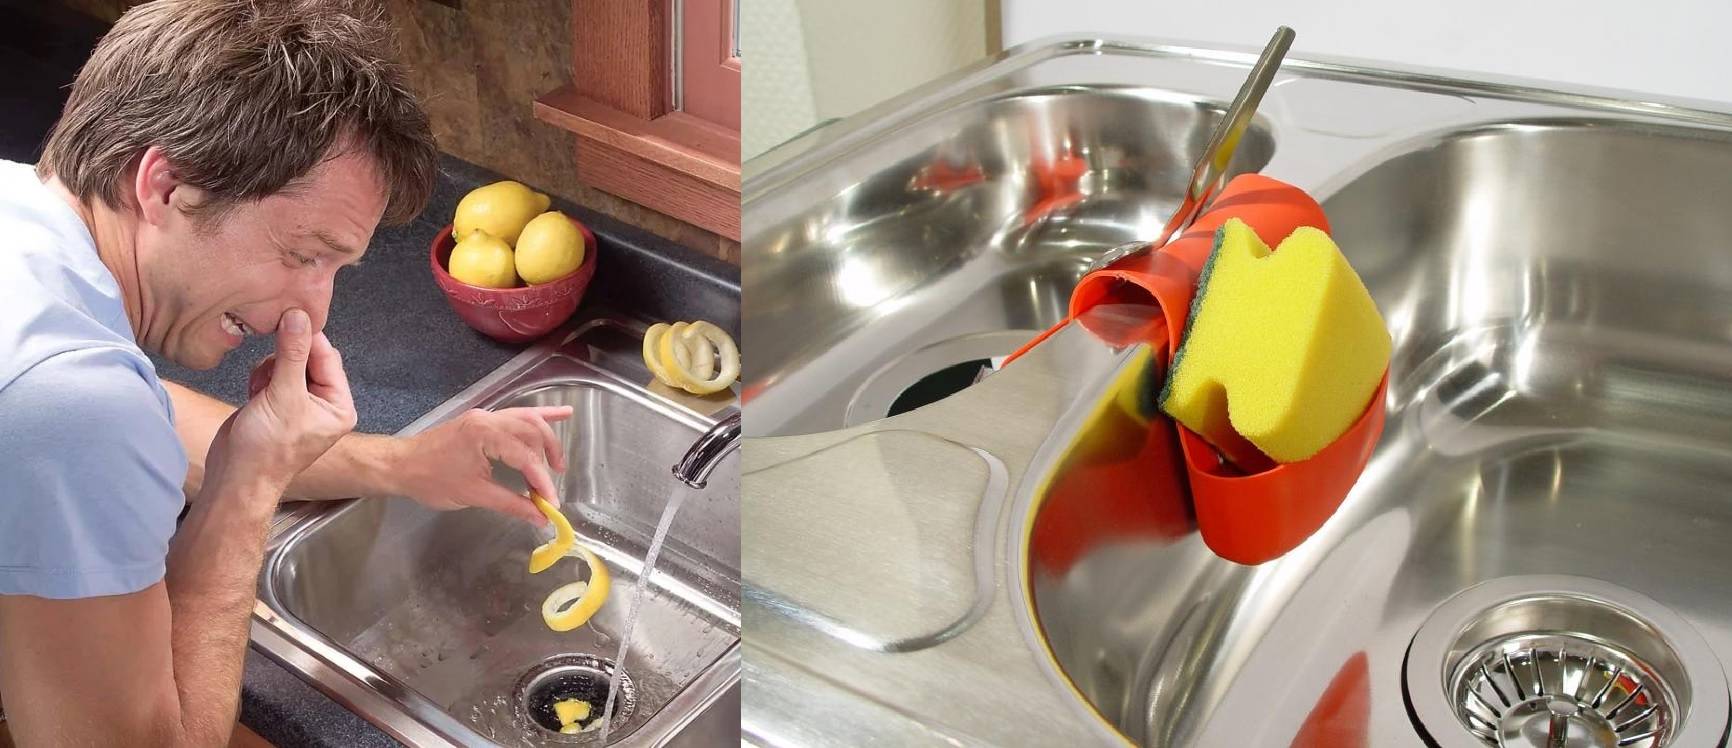 Запах канализации из раковины на кухне: причины, способы устранения и профилактика